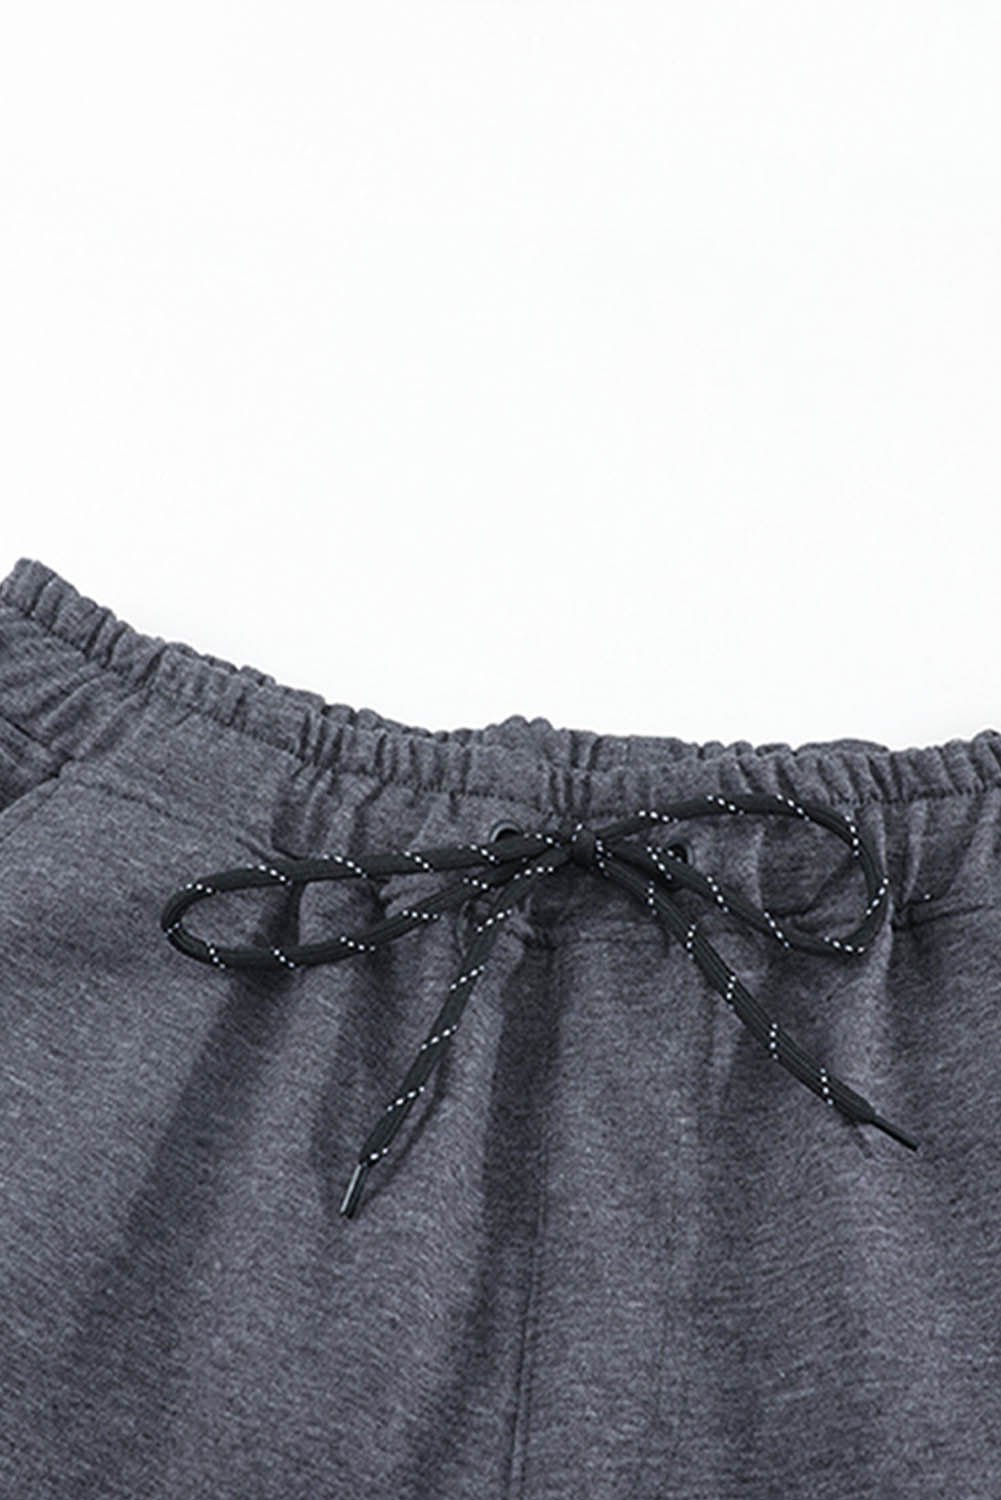 Gray Crown K Heart Graphic Men Sweatpants Men's Pants JT's Designer Fashion